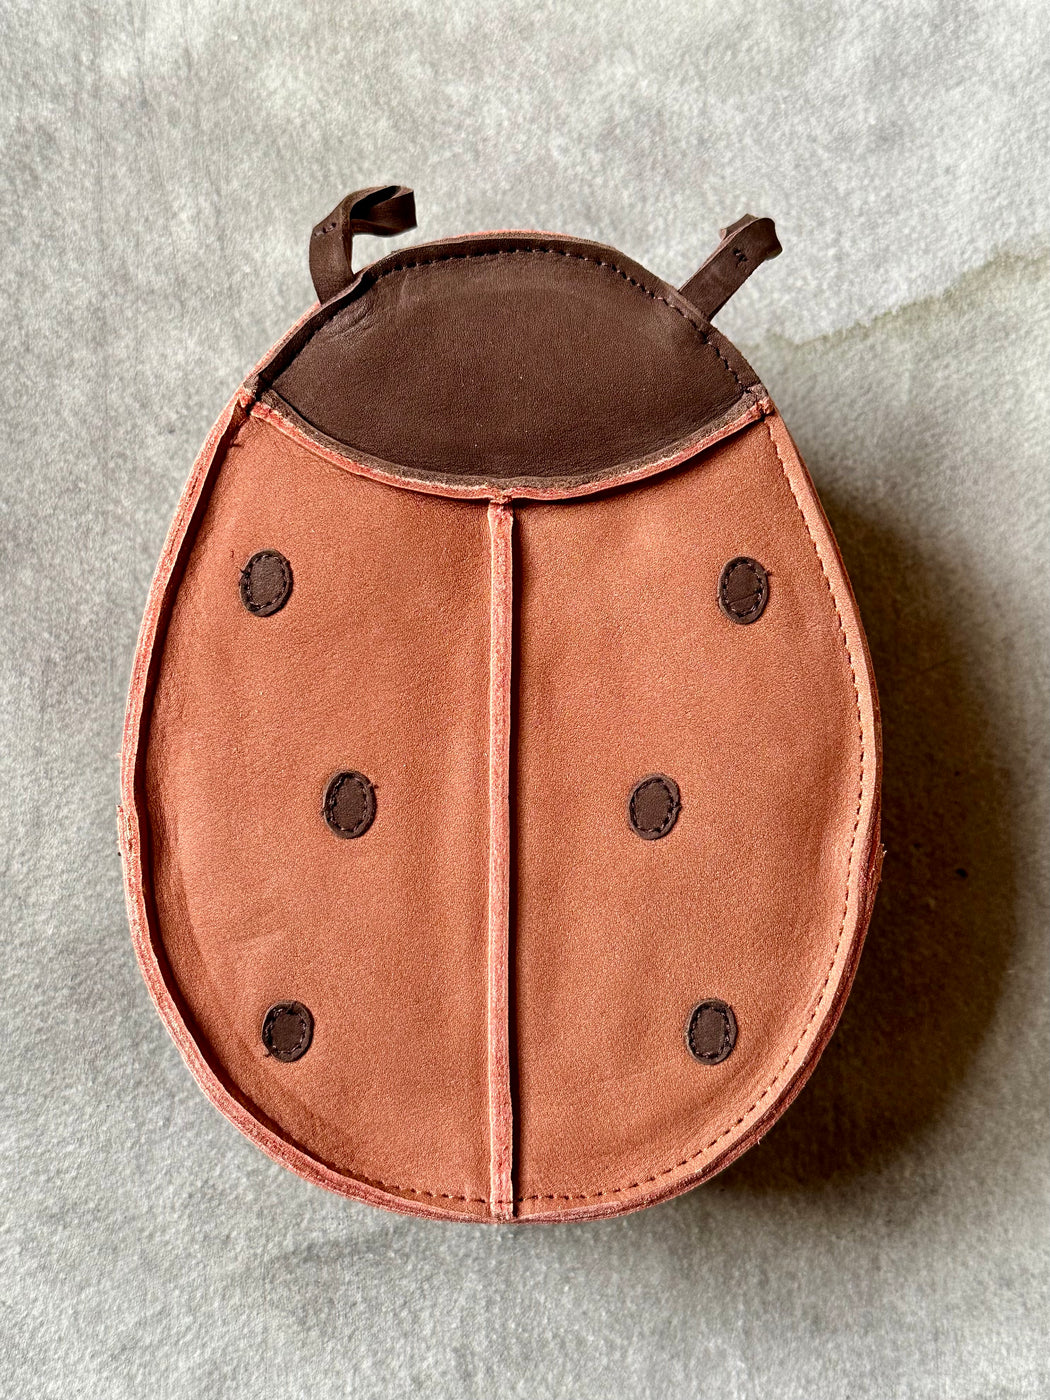 Donsje Little Leather "Ladybug" Backpack